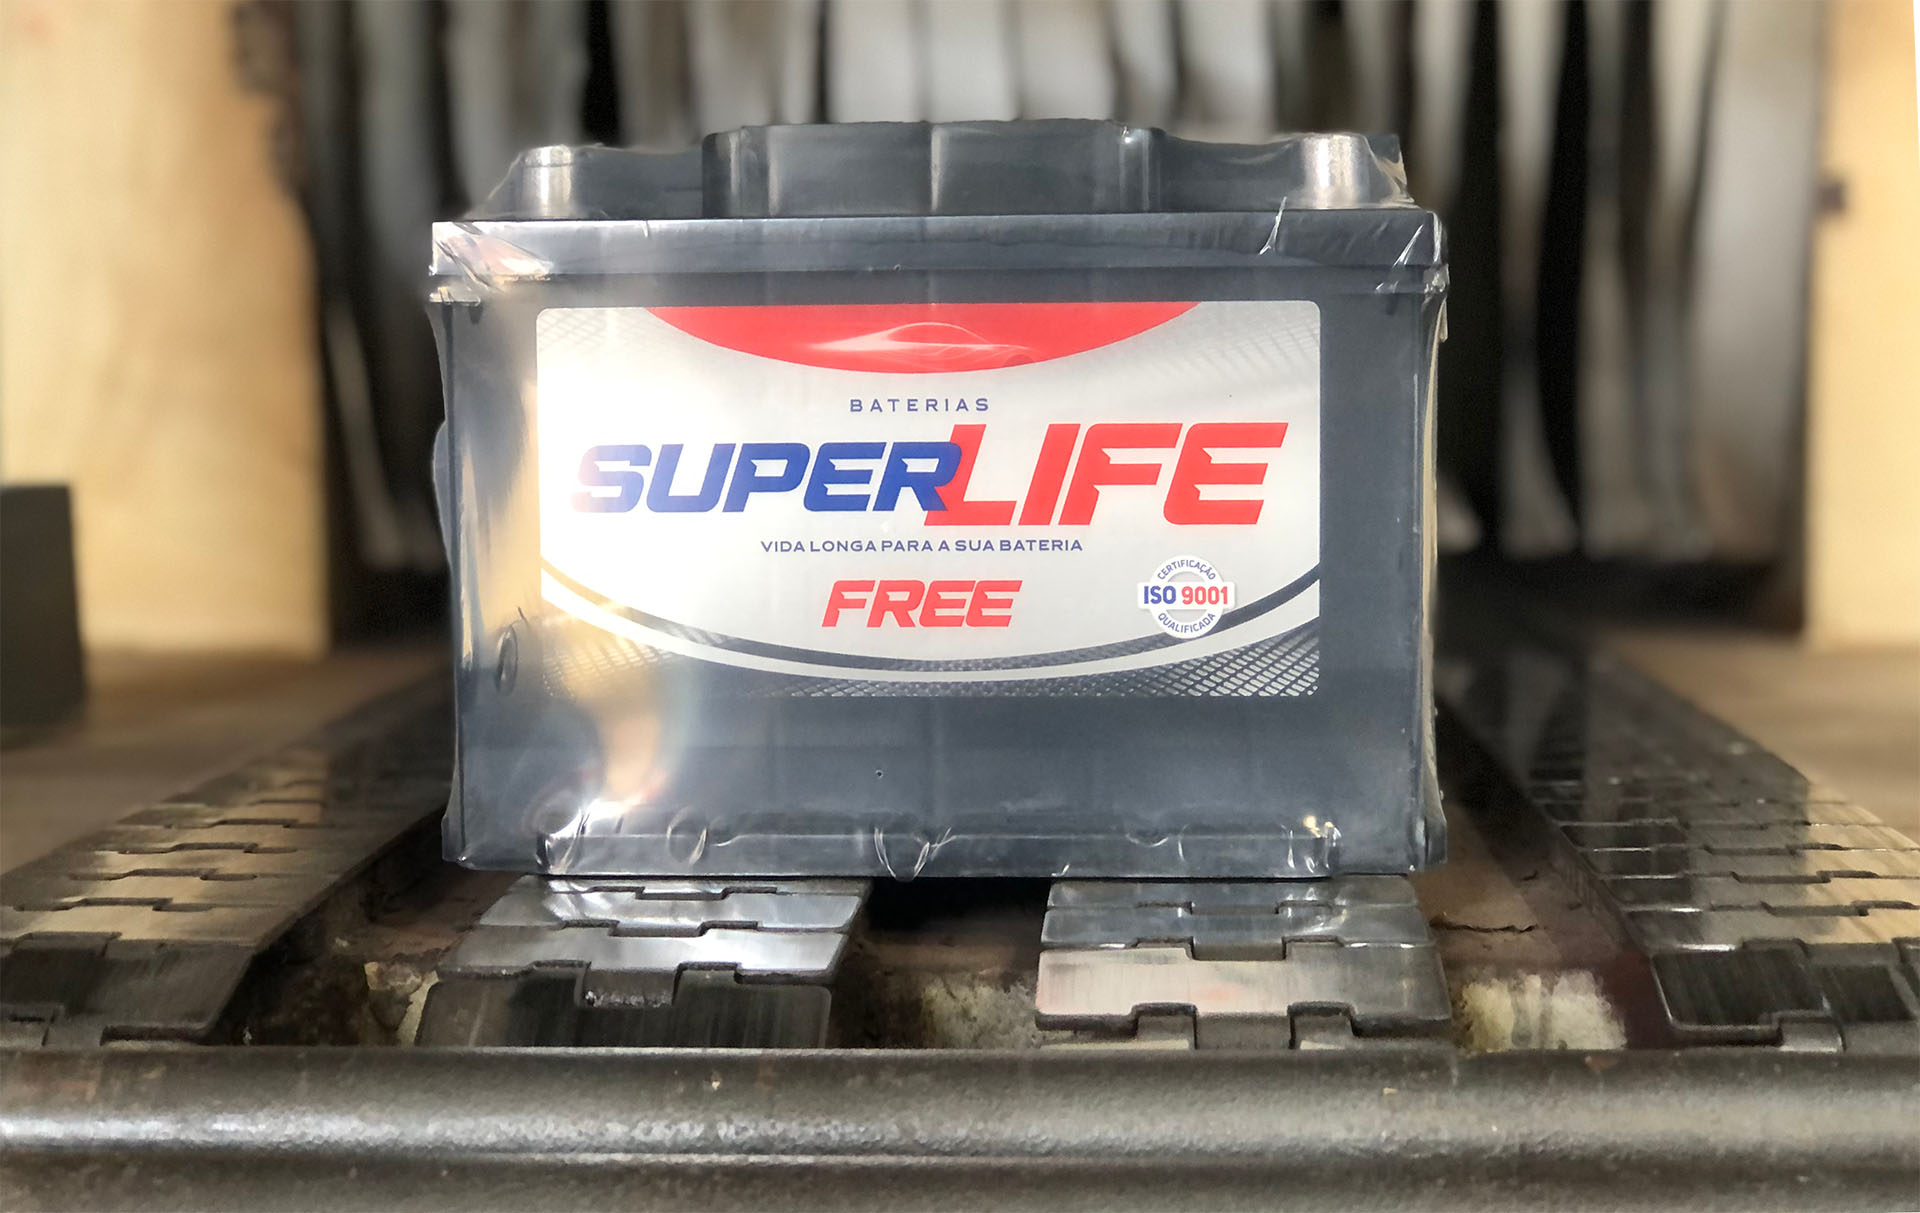 Baterias Superlife